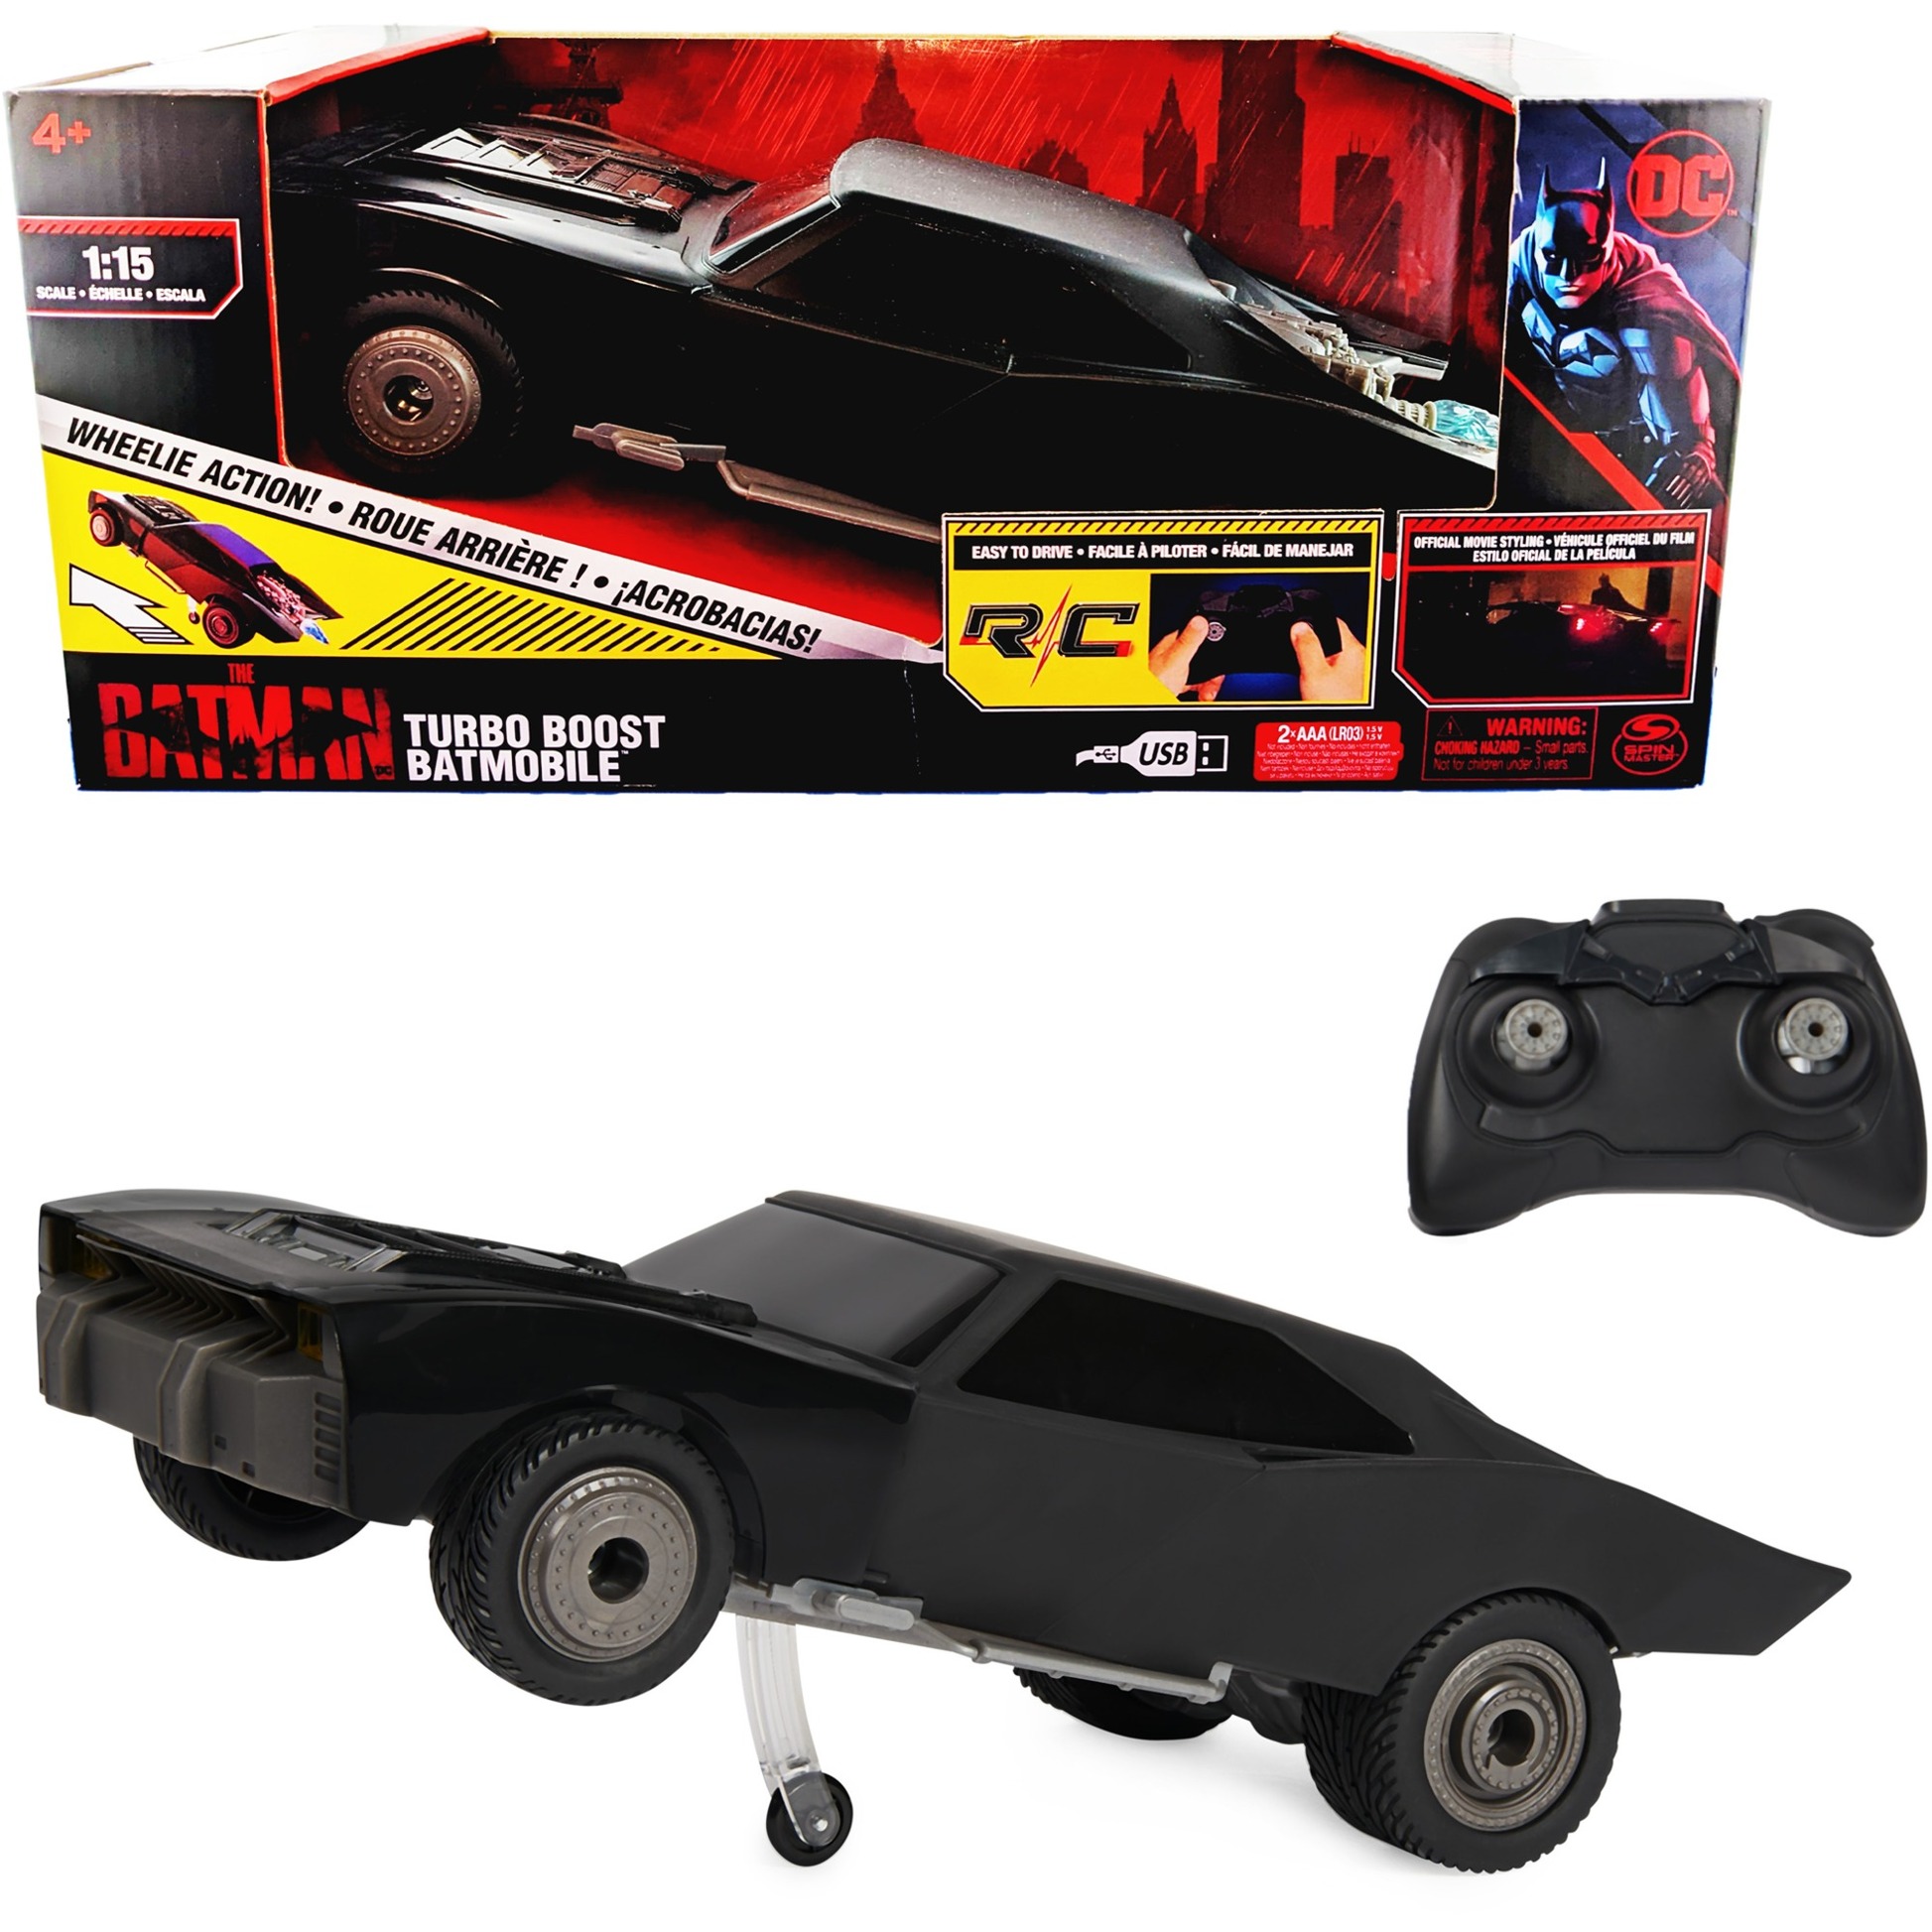 Image of Alternate - "The Batman" Turbo Boost Batmobile mit Wheelie-Funktion, RC online einkaufen bei Alternate